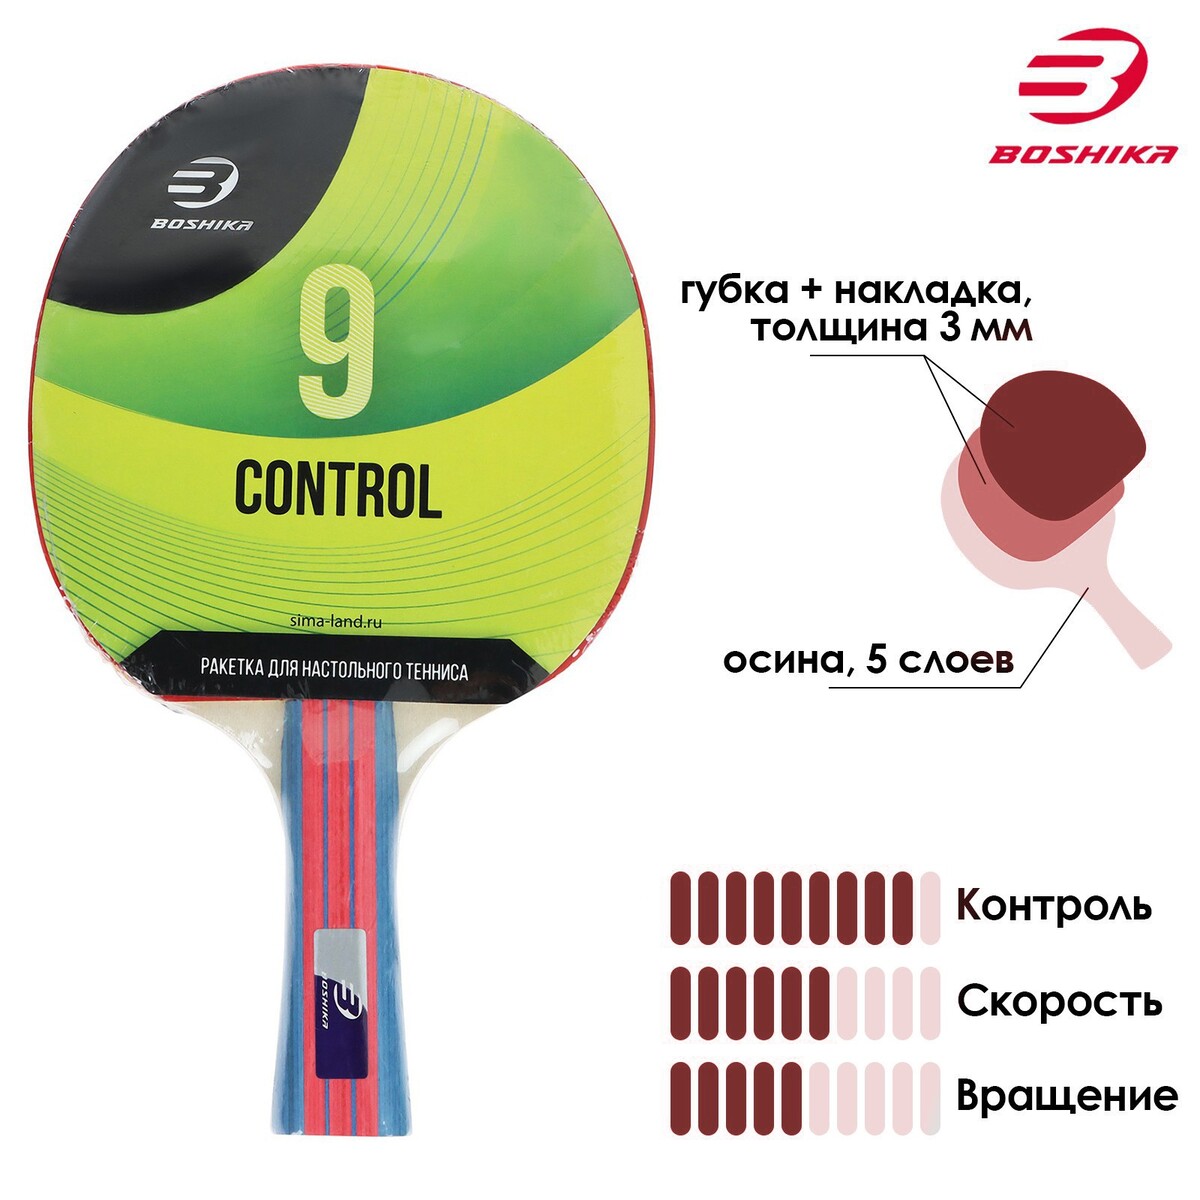 Ракетка для настольного тенниса boshika control 9, для начинающих, губка 1,8 мм, коническая ручка ракетка donic champs 150 270216